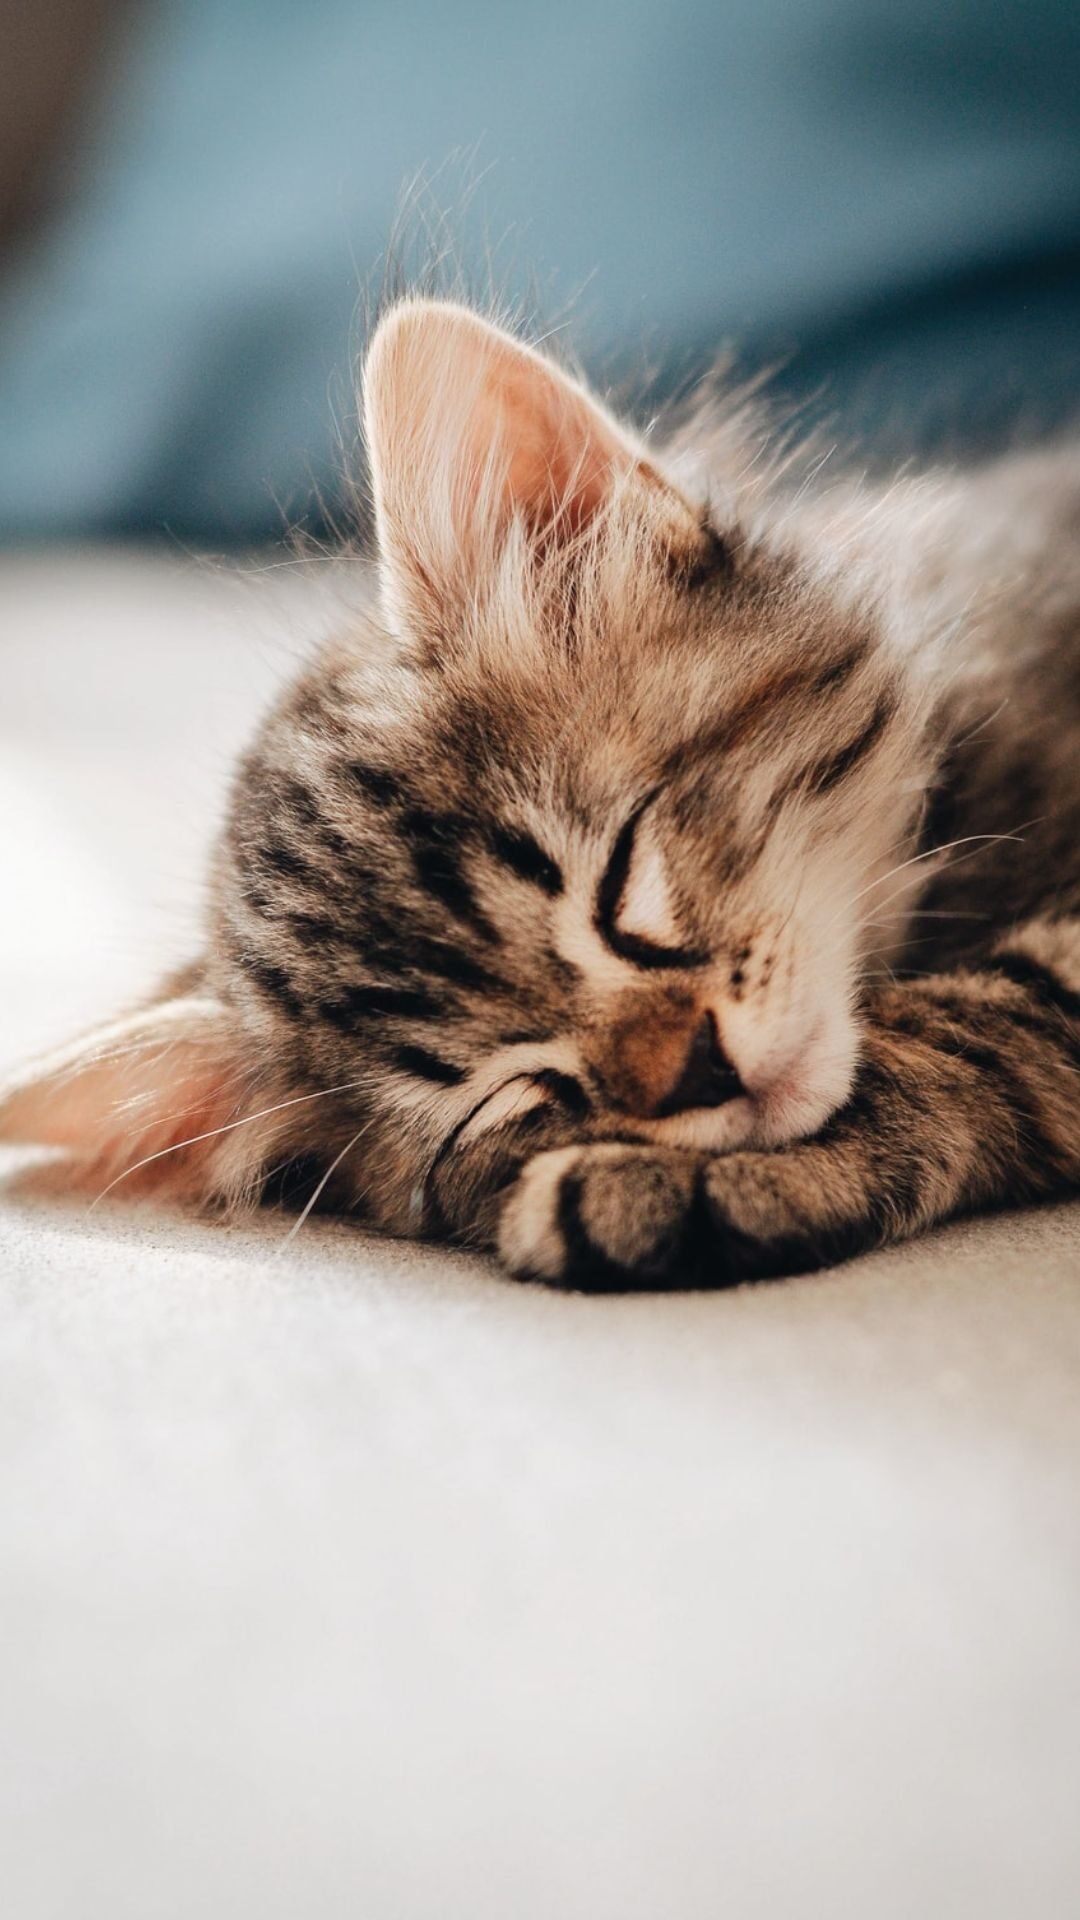 Sleeping Cute Cat